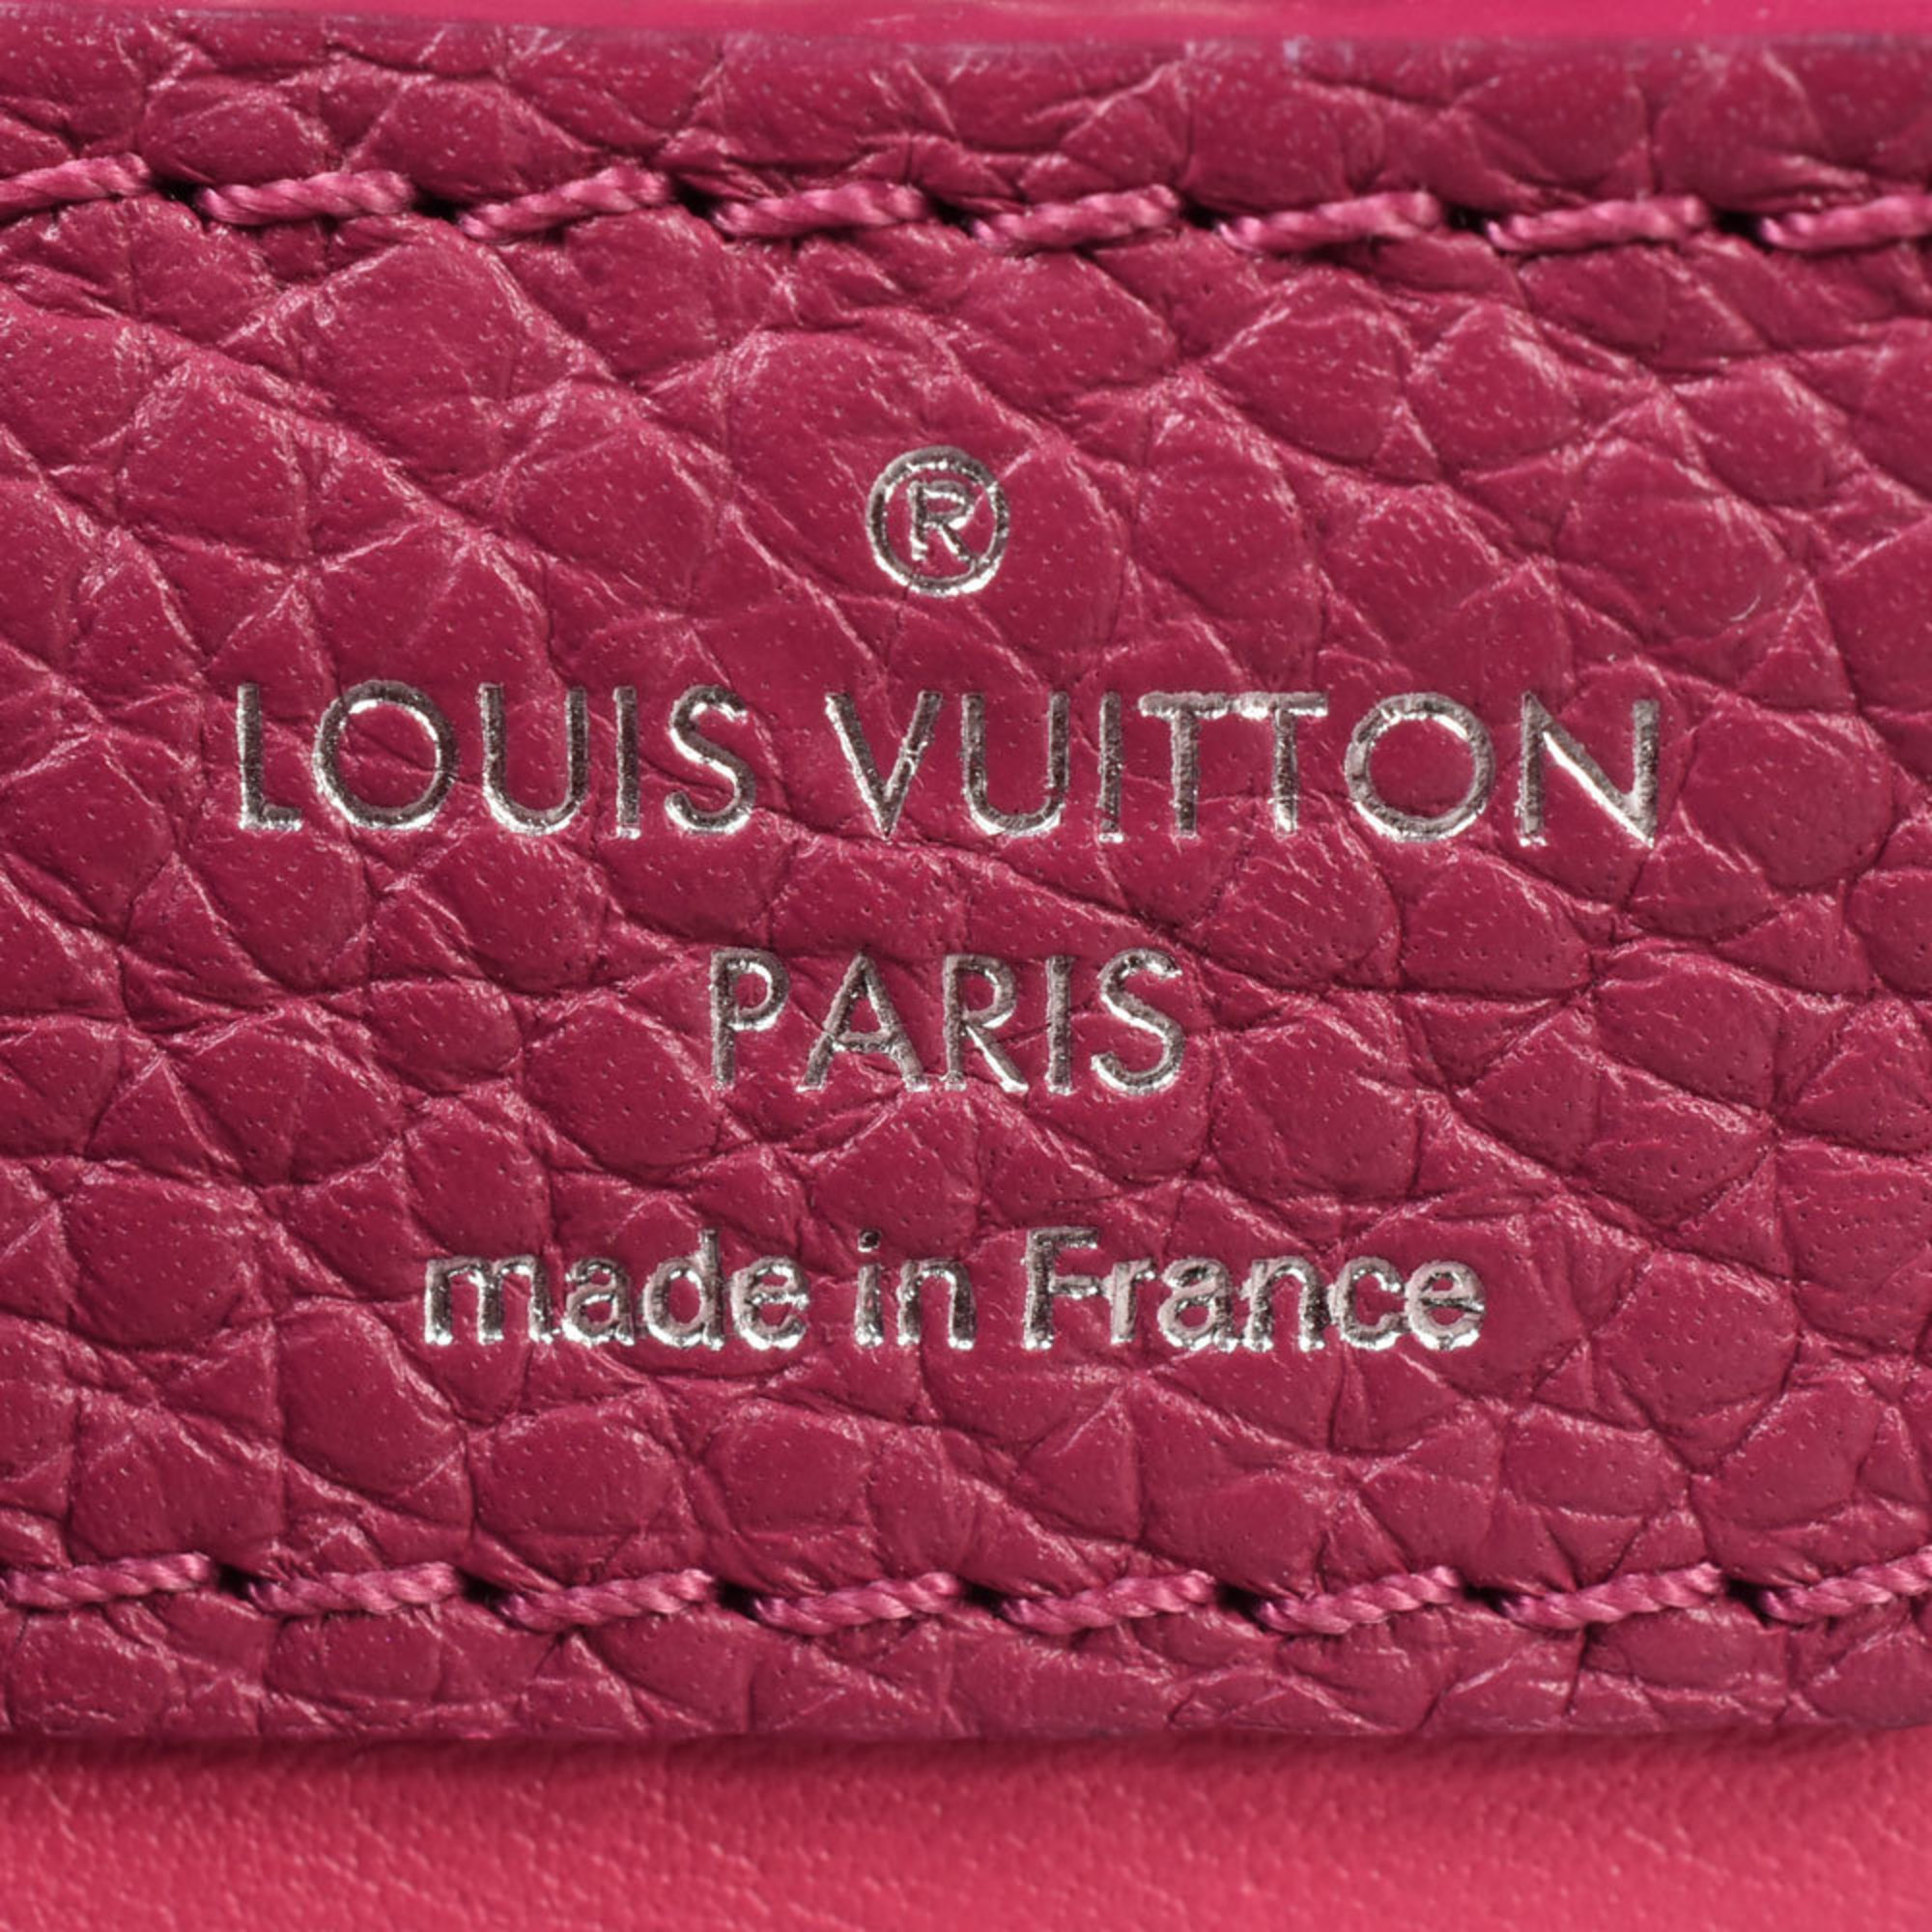 LOUIS VUITTON Capucines PM Shoulder Bag Handbag Taurillon Leather Purple